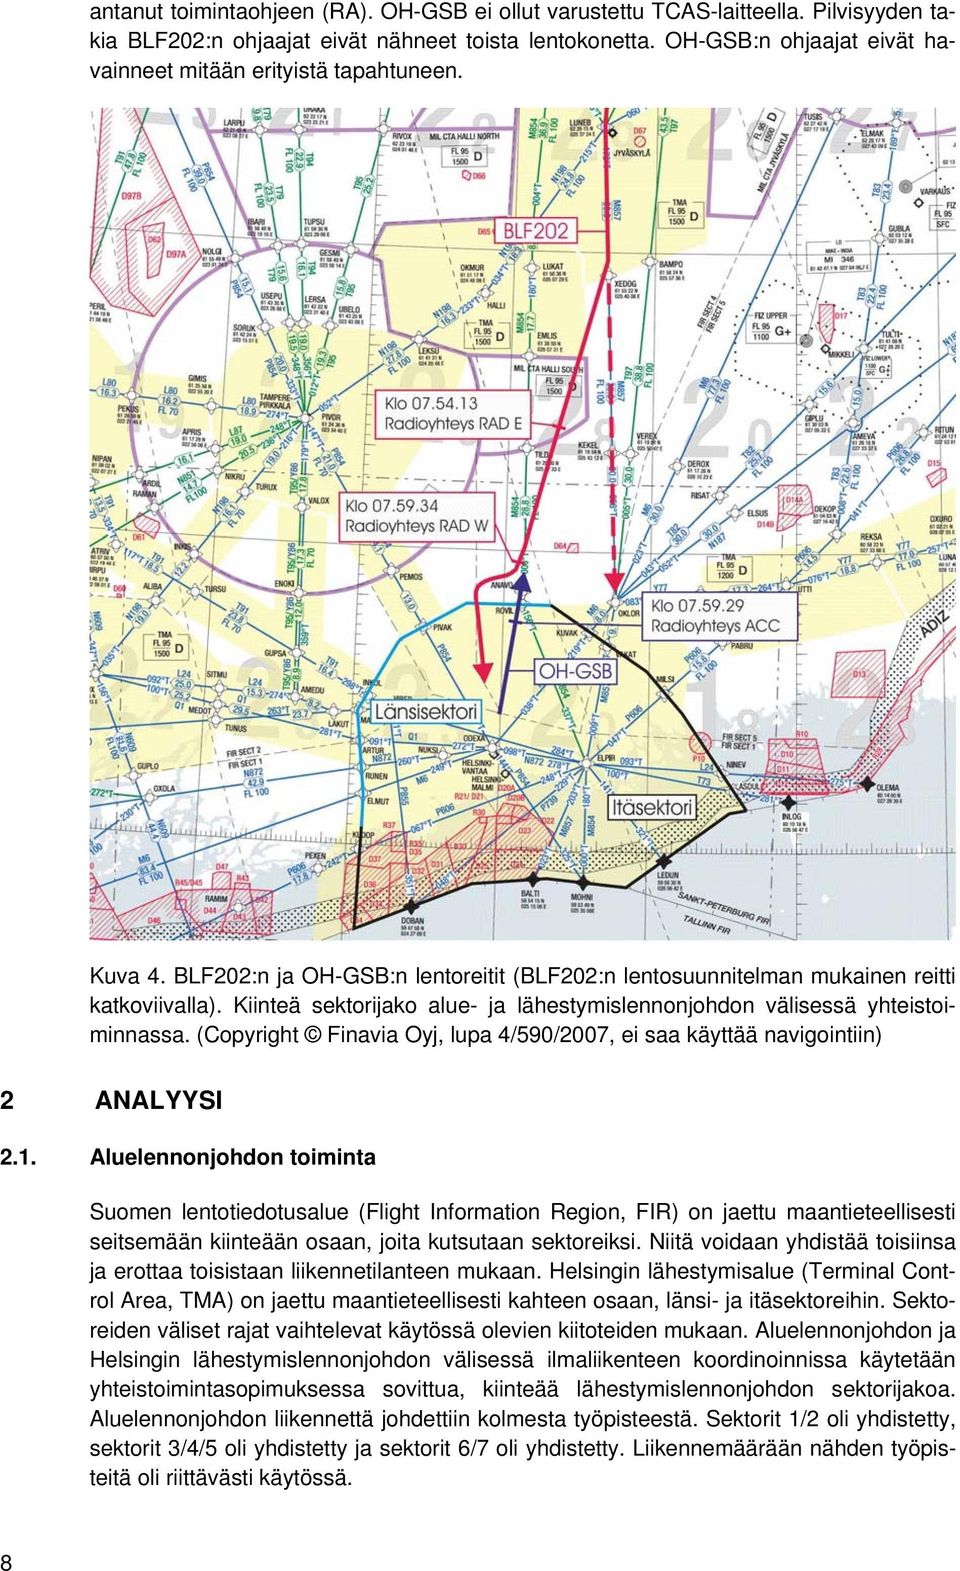 Kiinteä sektorijako alue- ja lähestymislennonjohdon välisessä yhteistoiminnassa. (Copyright Finavia Oyj, lupa 4/590/2007, ei saa käyttää navigointiin) 2 ANALYYSI 2.1.